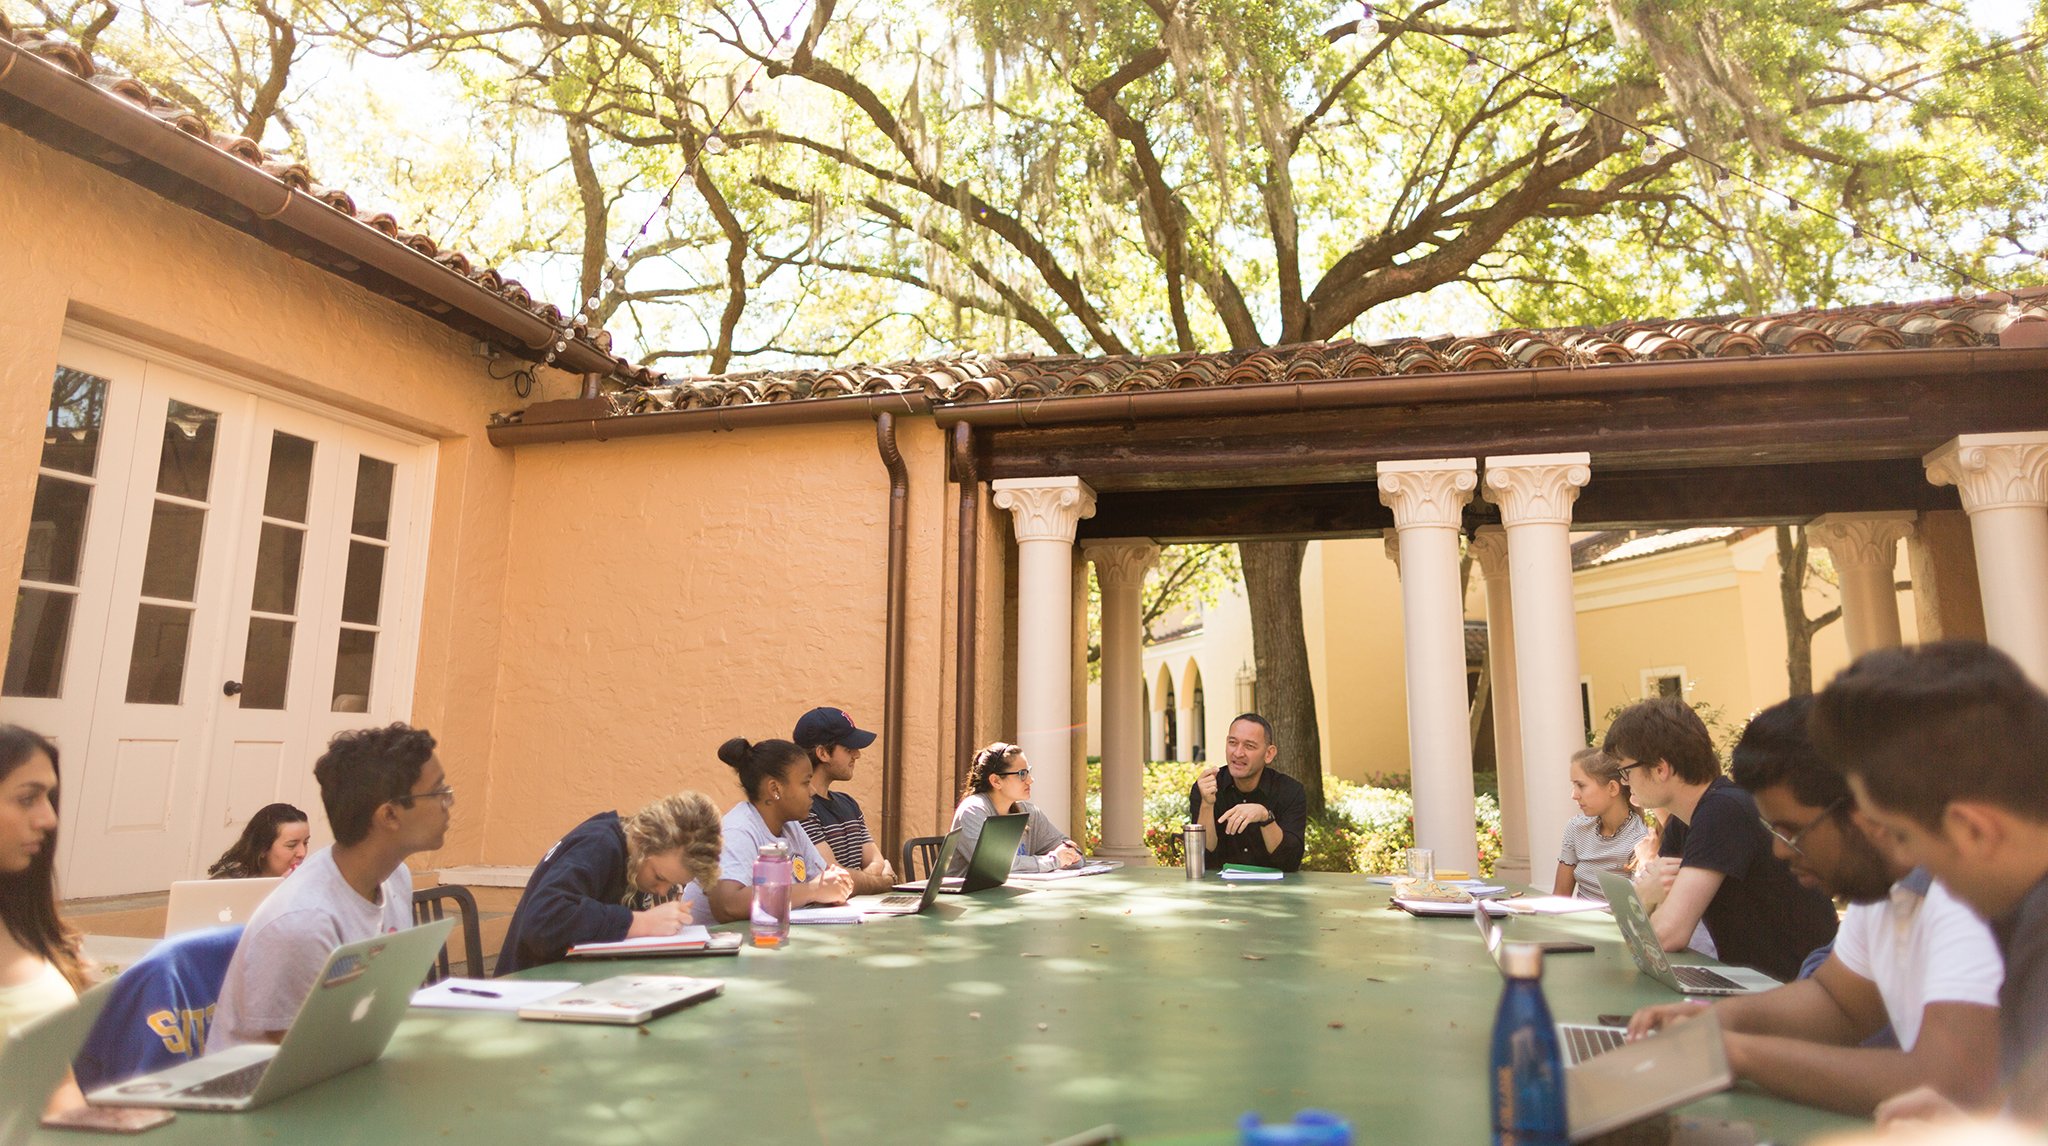 Rollins outdoor classroom